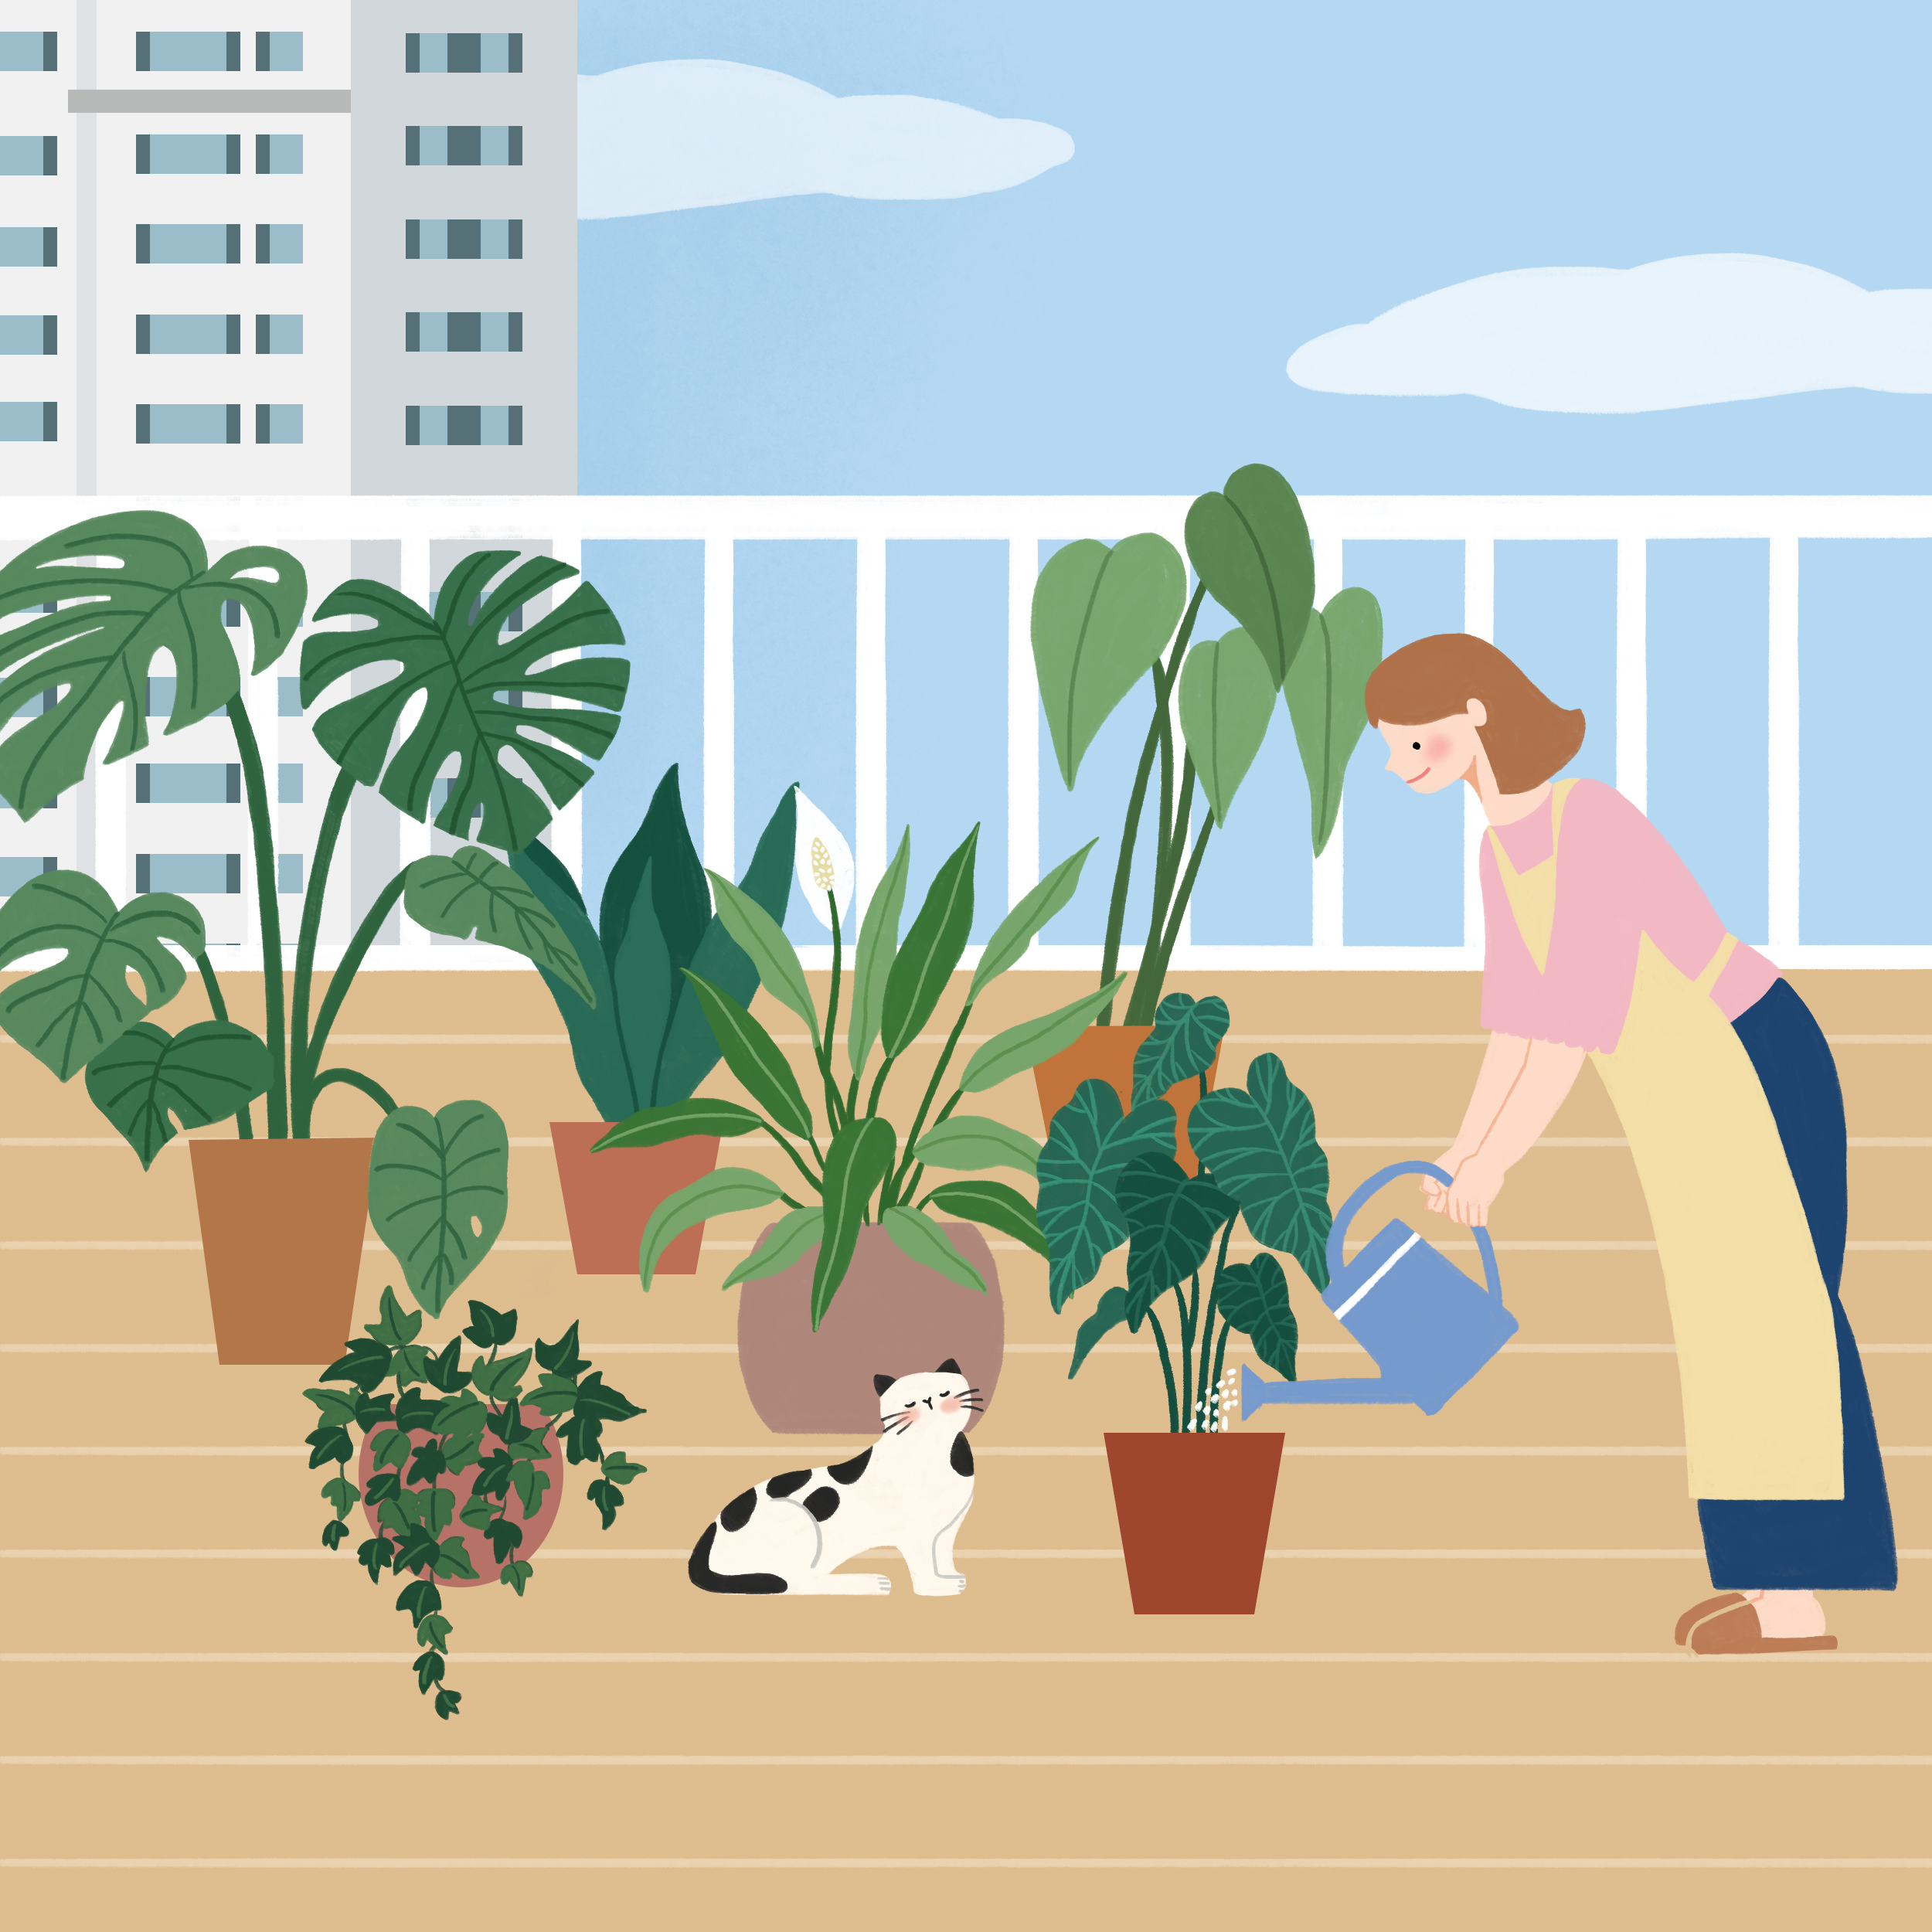 자이매거진-비욘드아파트먼트-플랜테리어-아파트 발코니에 놓인 식물 화분들에 물을 주는 여성과 그 근처에서 나른하게 눈을 감고 있는 고양이